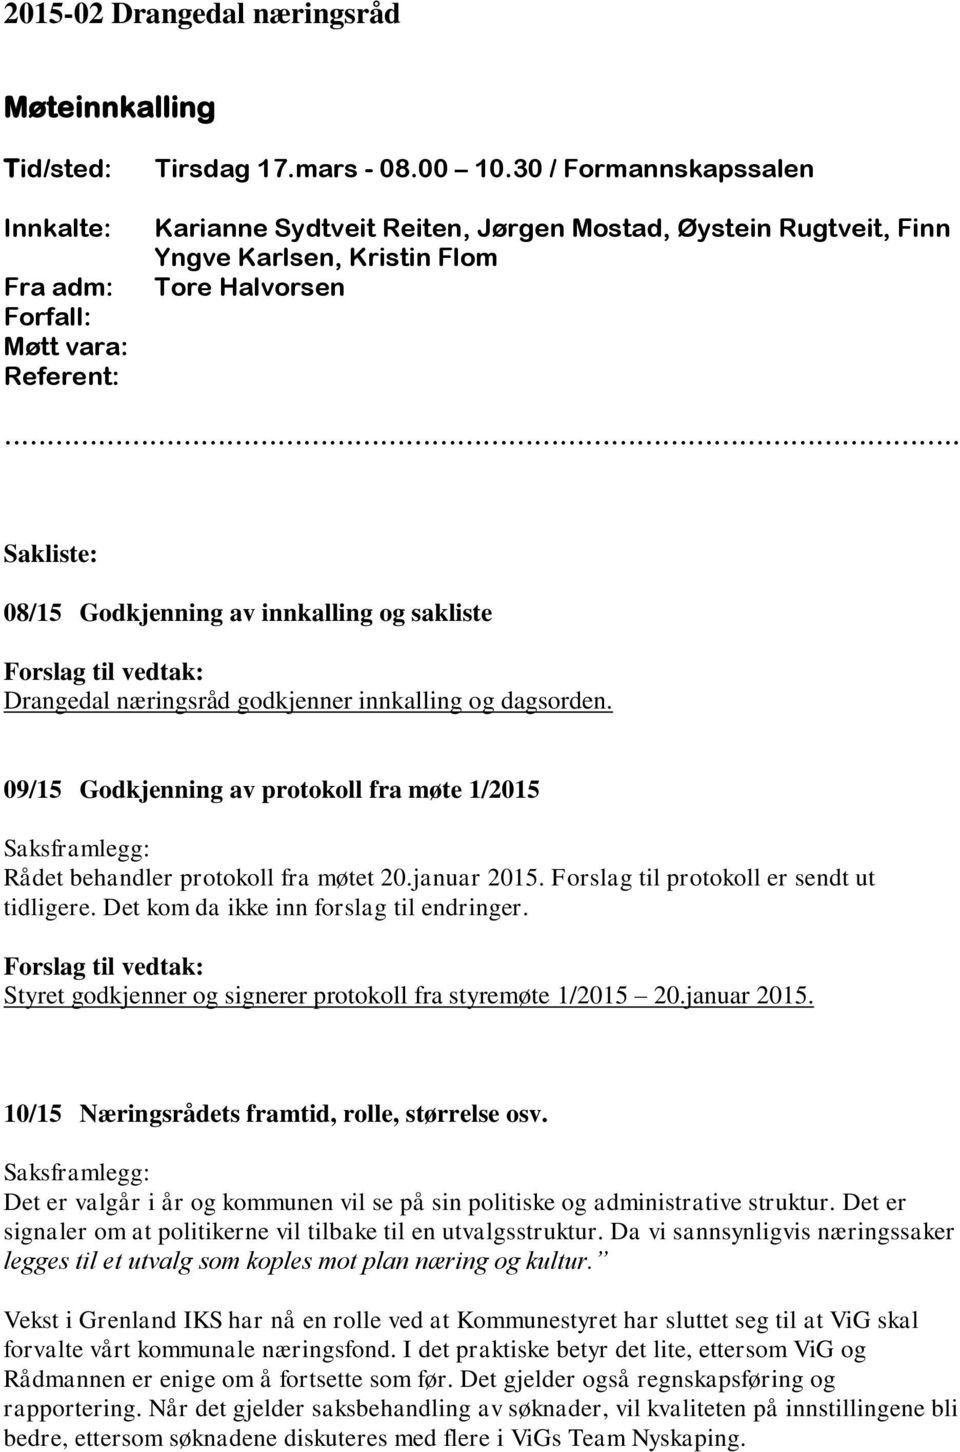 Sakliste: 08/15 Godkjenning av innkalling og sakliste Drangedal næringsråd godkjenner innkalling og dagsorden. 09/15 Godkjenning av protokoll fra møte 1/2015 Rådet behandler protokoll fra møtet 20.